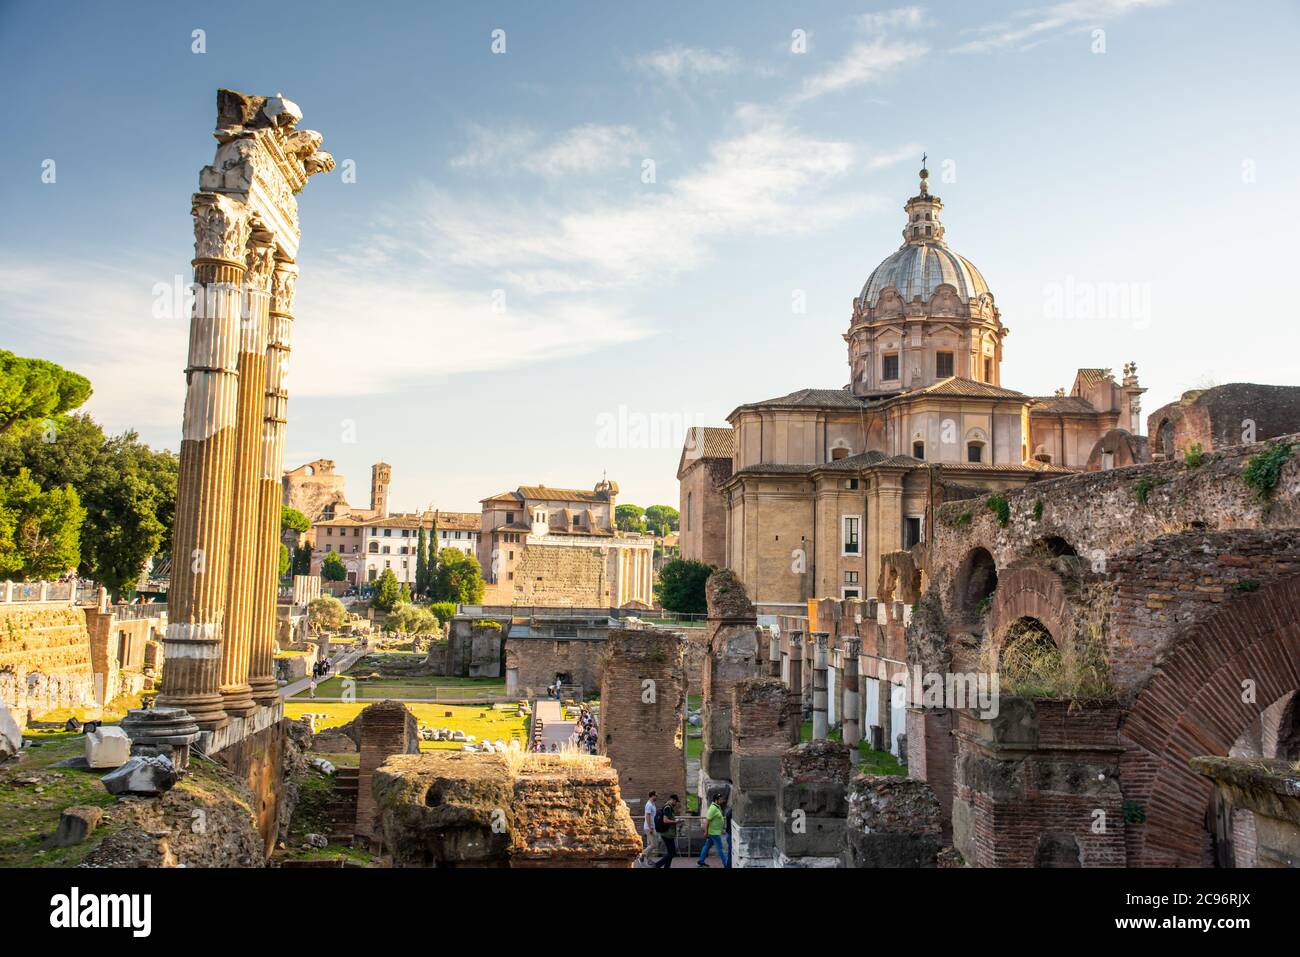 Vista del Forum Romanum dal Campidoglio in Italia, Roma. Viaggi nel mondo Foto Stock